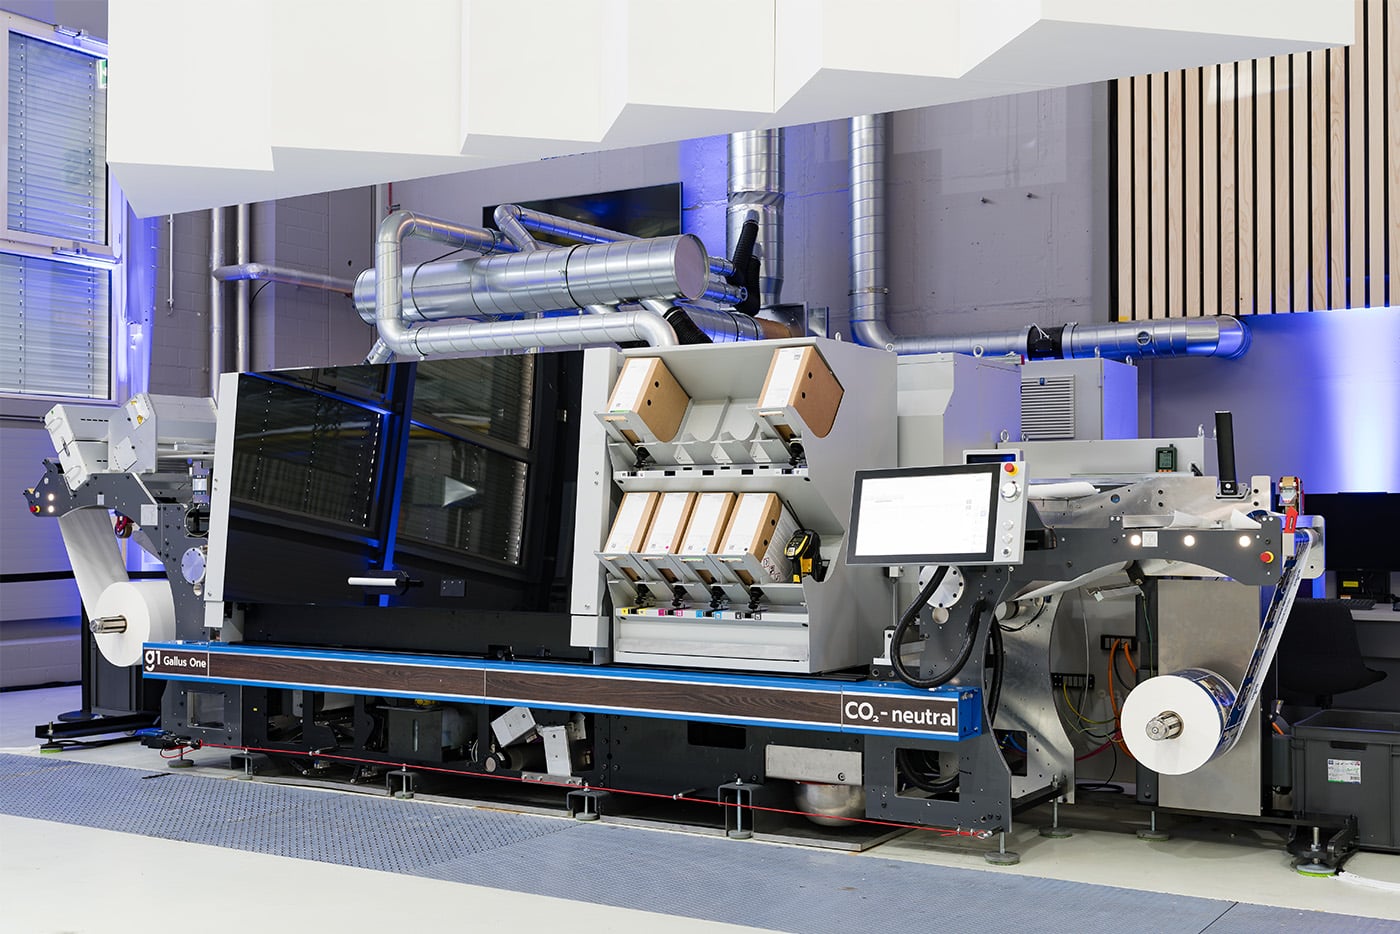 Die neue digitalen Etikettendruckmaschine Gallus One verbindet die Etikettenproduktion mit maximaler Automatisierung und cloudbasierten Technologien [Quelle: Gallus]